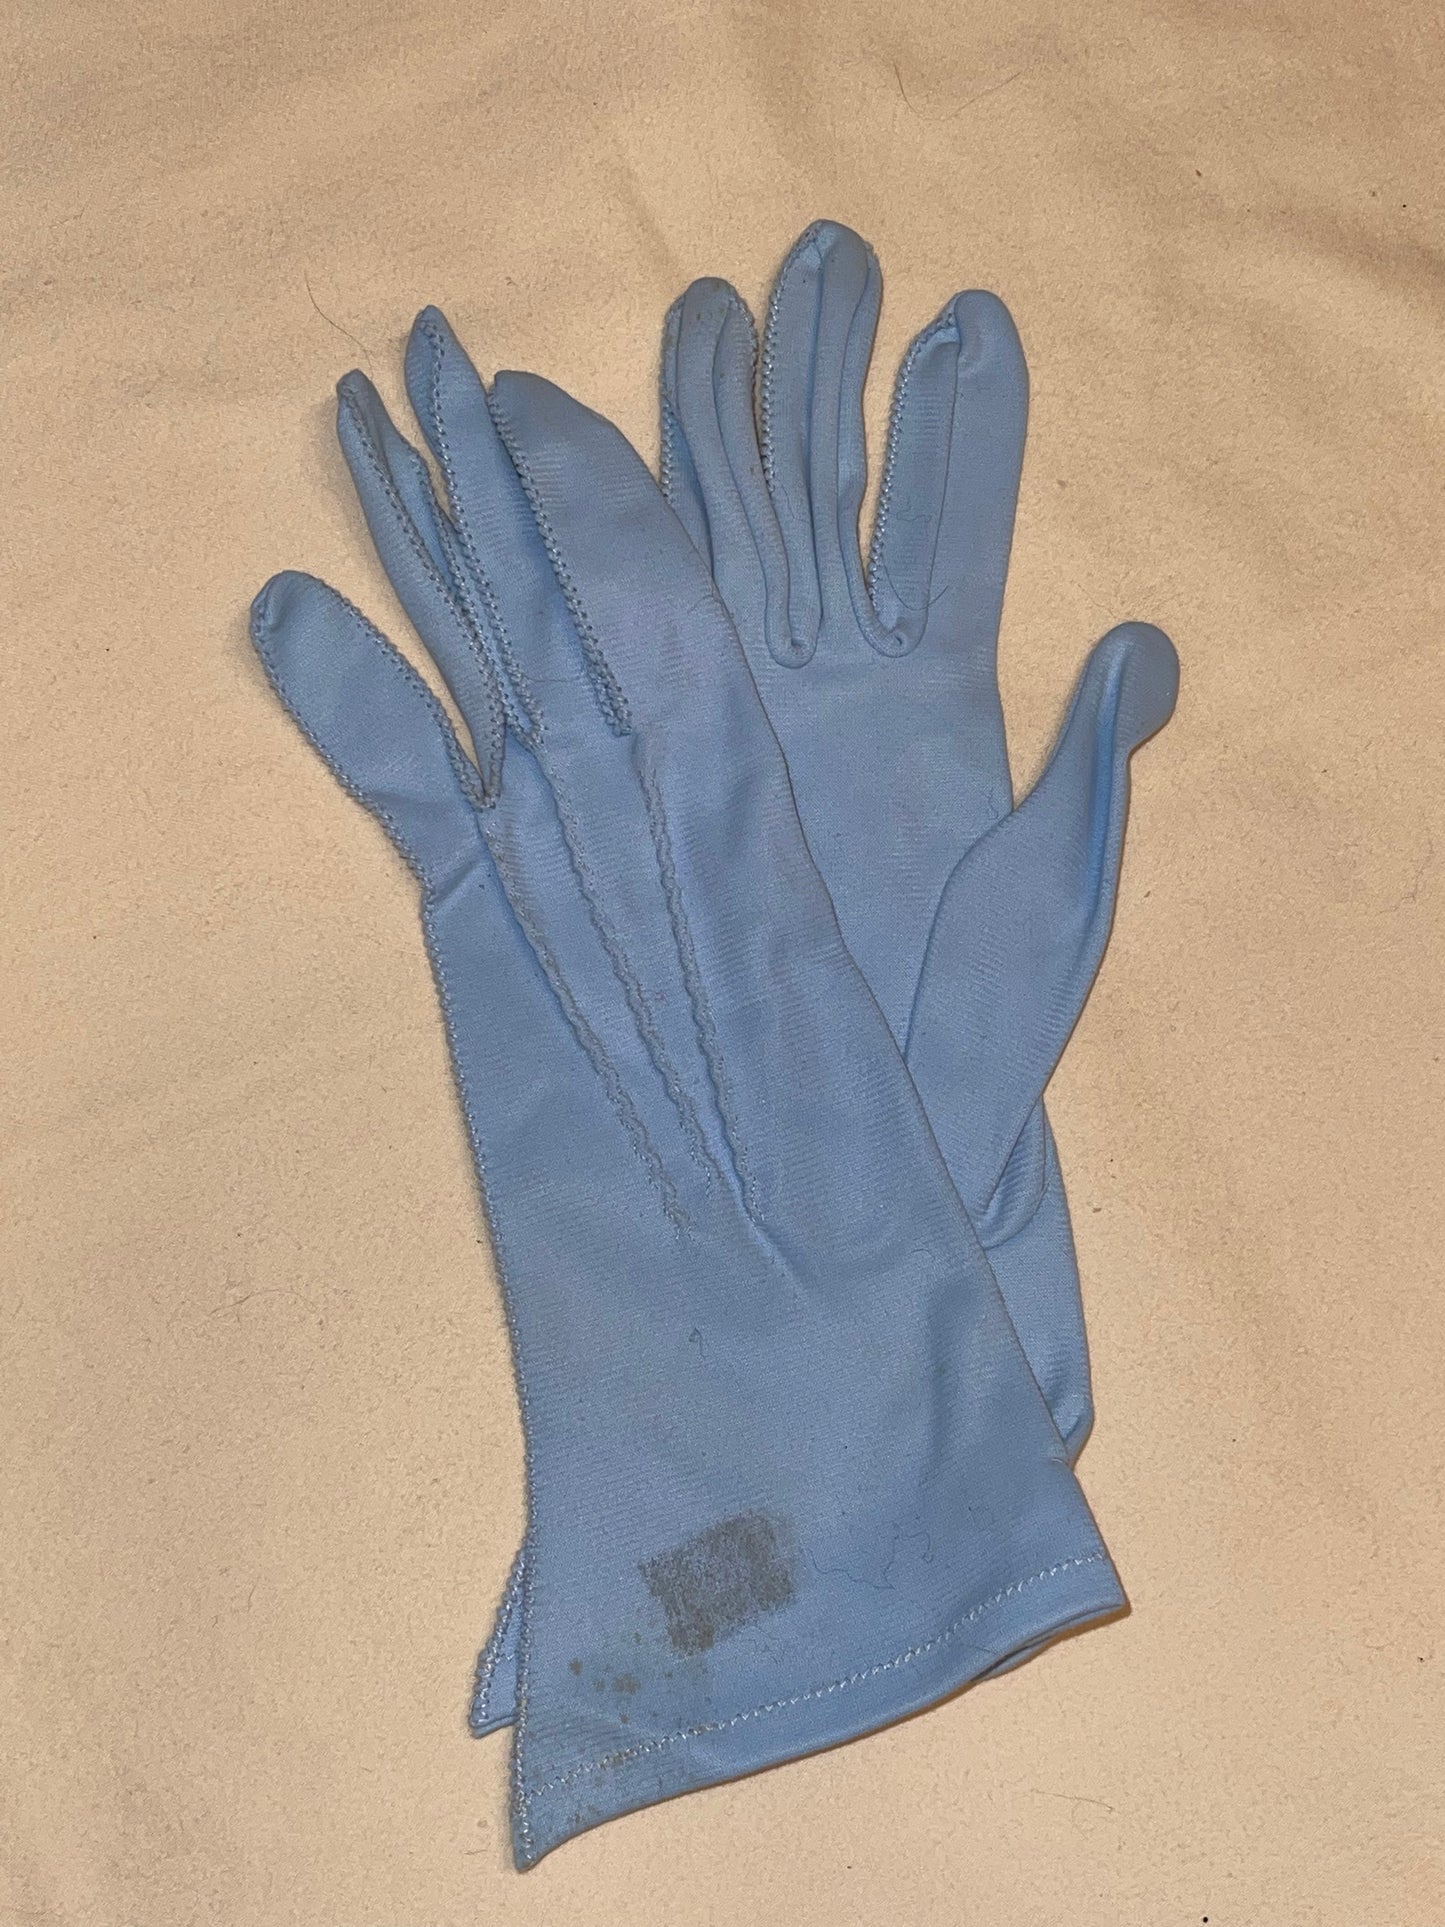 Max Meyer’s Light Blue Nylon Gloves